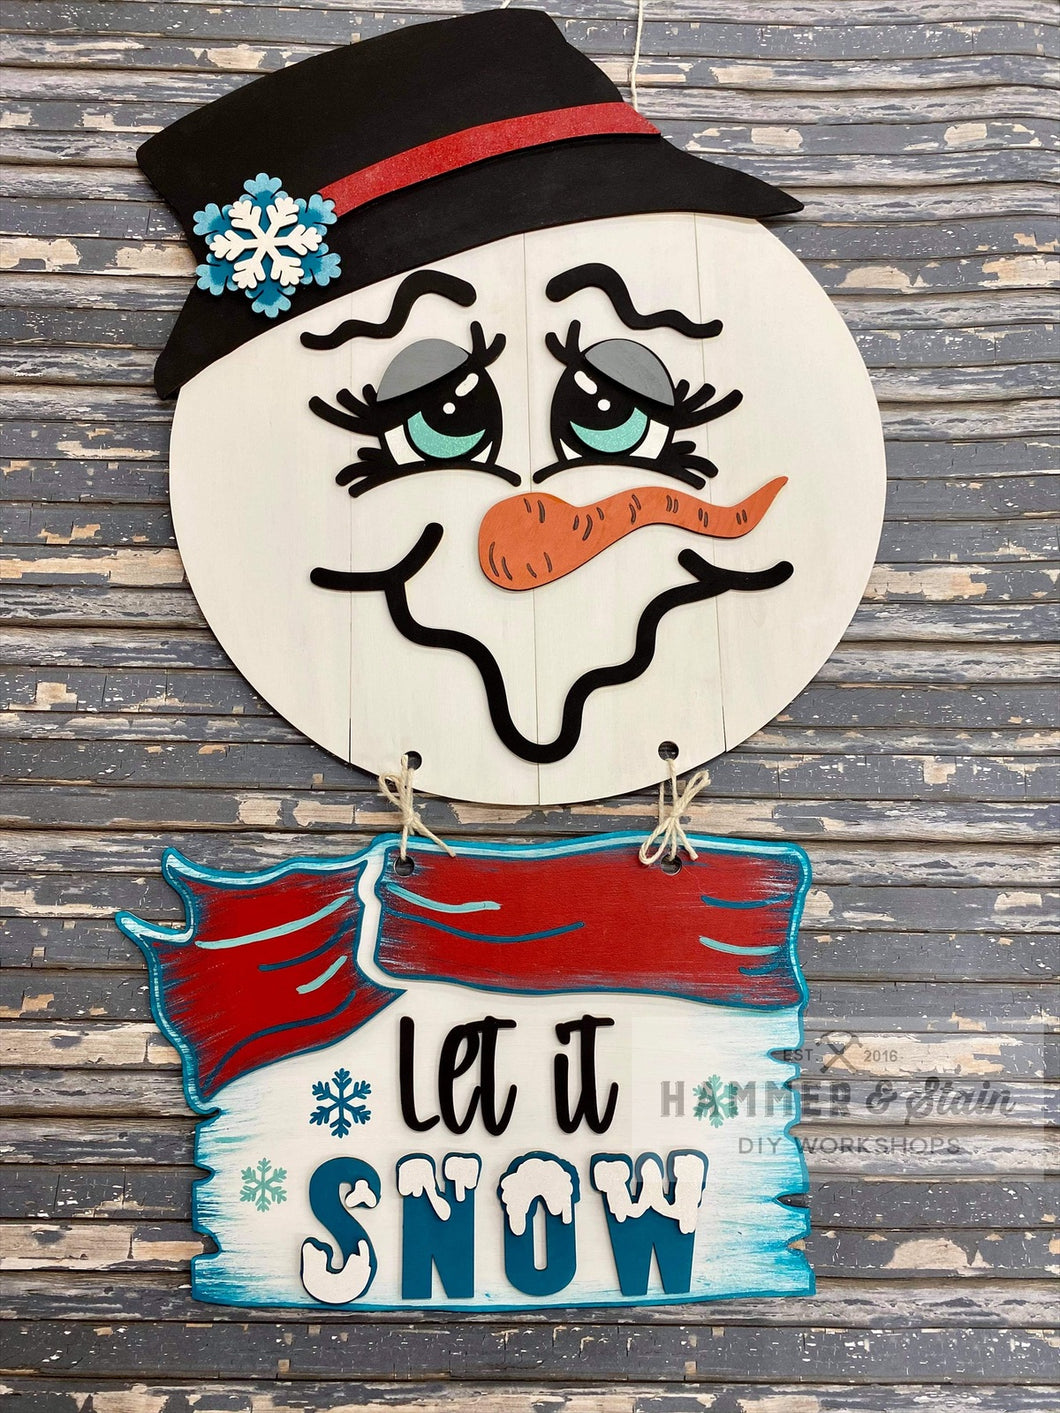 Snowman door hanger Workshop Wednesday 11/17 at 6pm